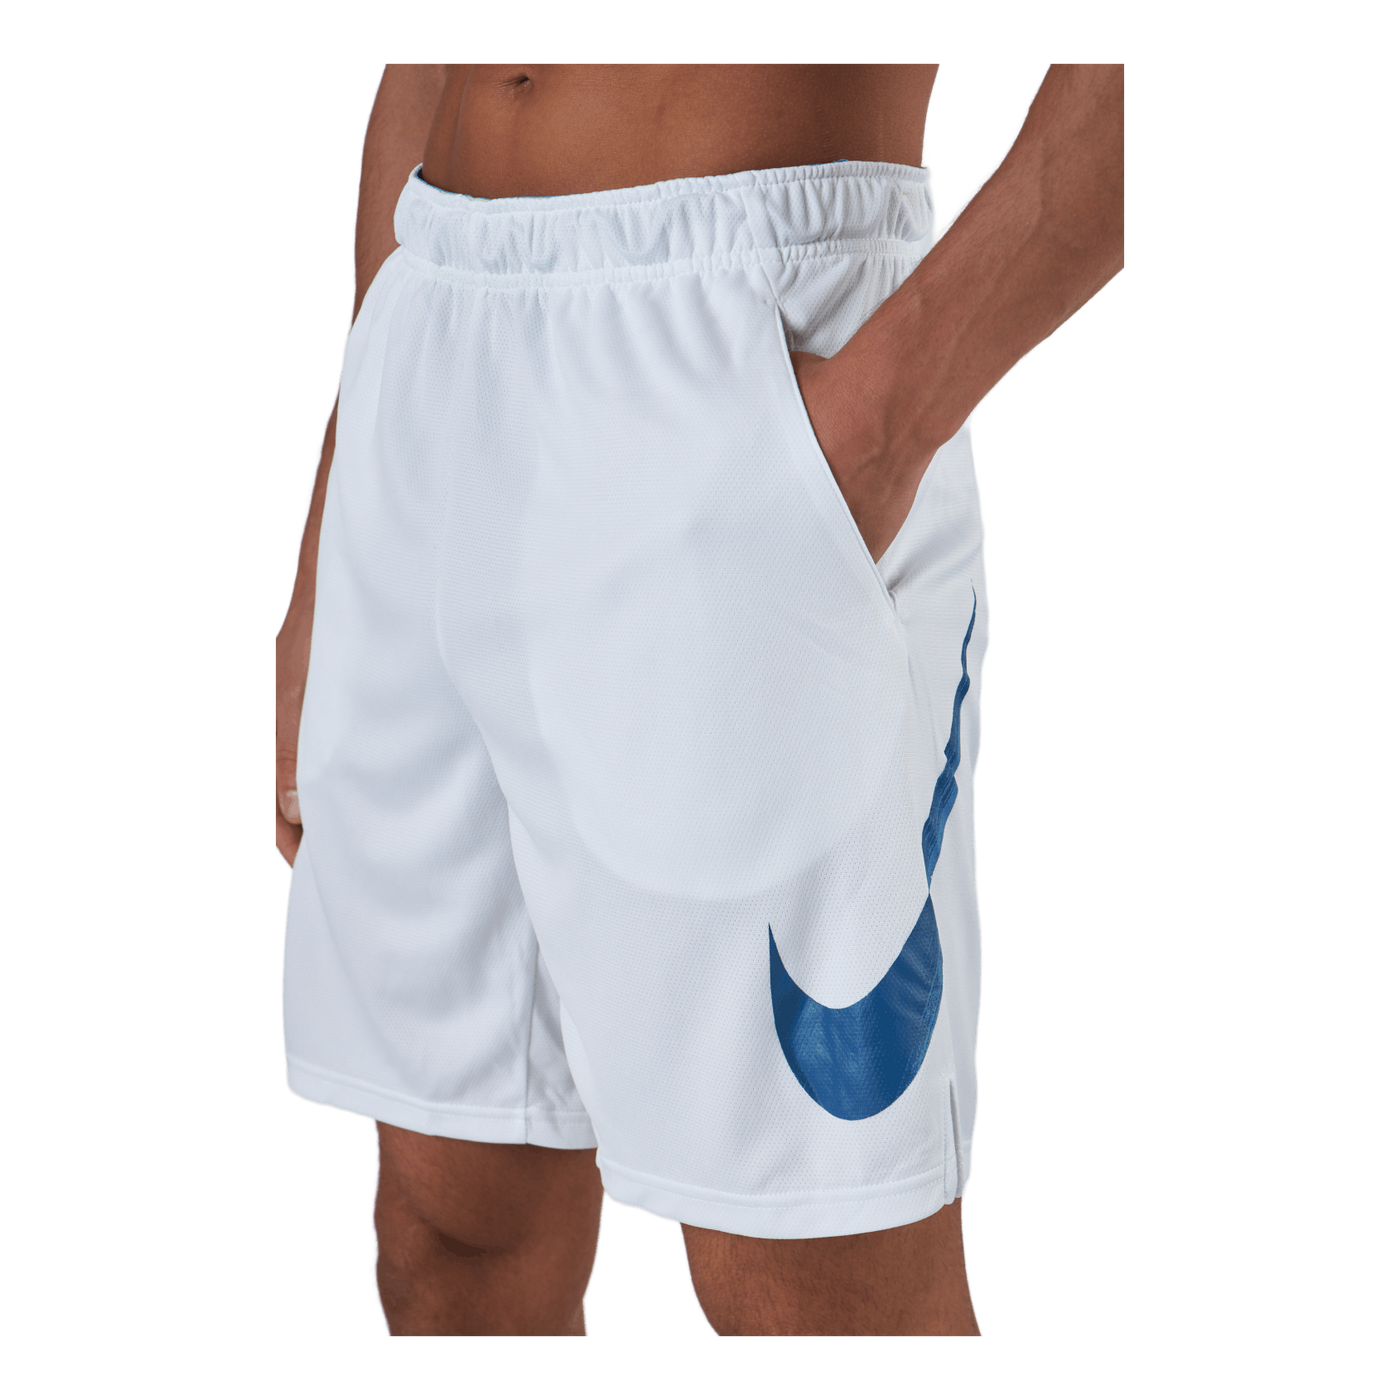 Dri-fit Sport Clash Men's Knit White/court Blue